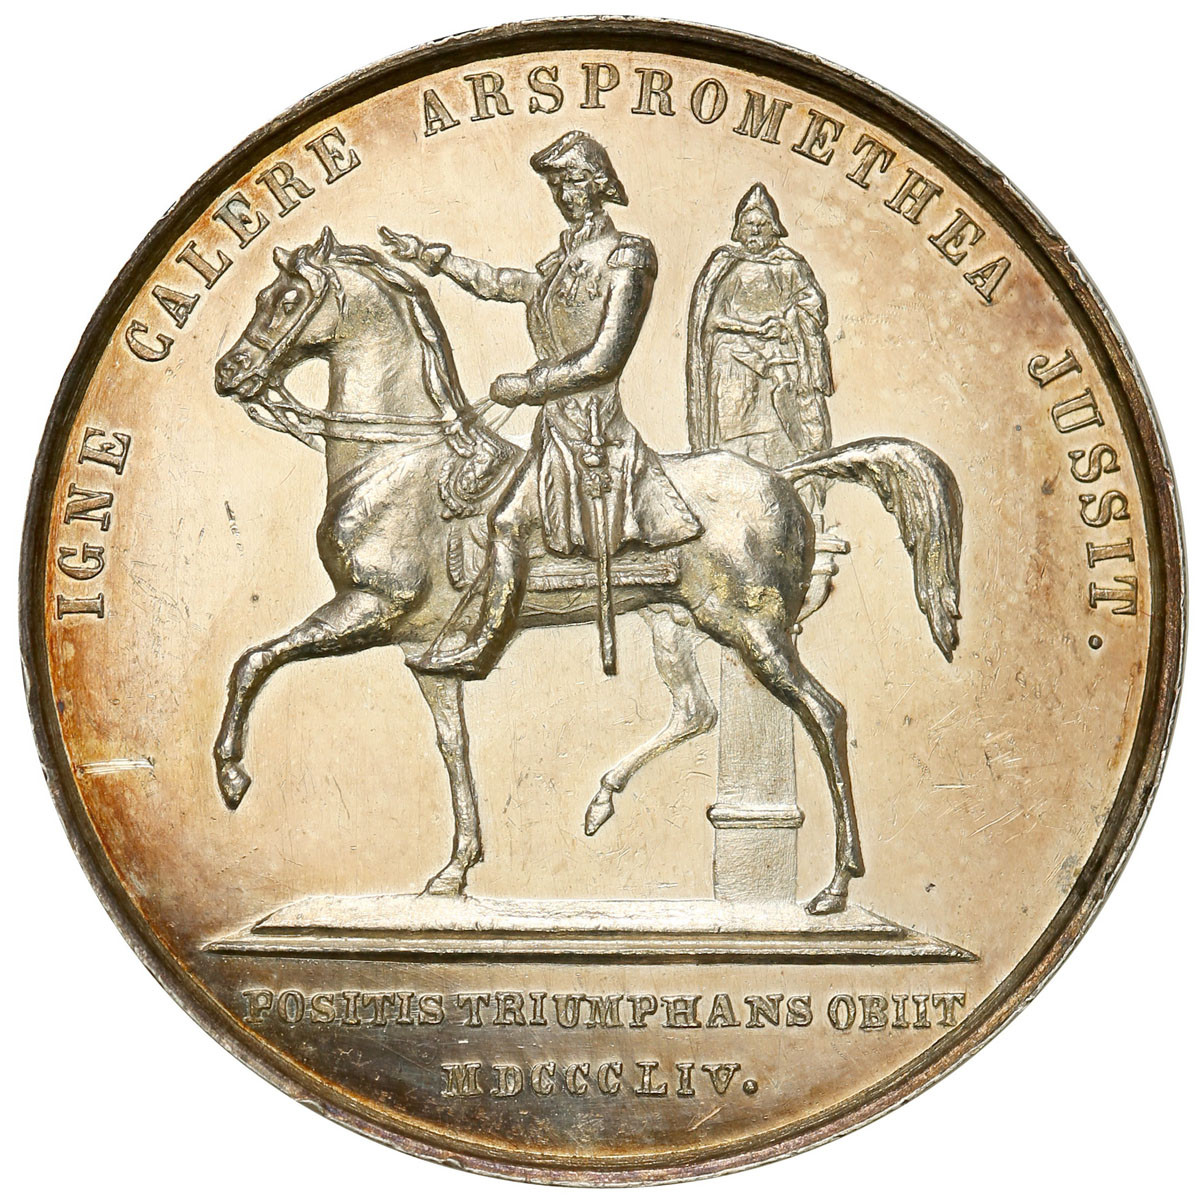 Szwecja. Medal 1844 - Fogelberg, srebro